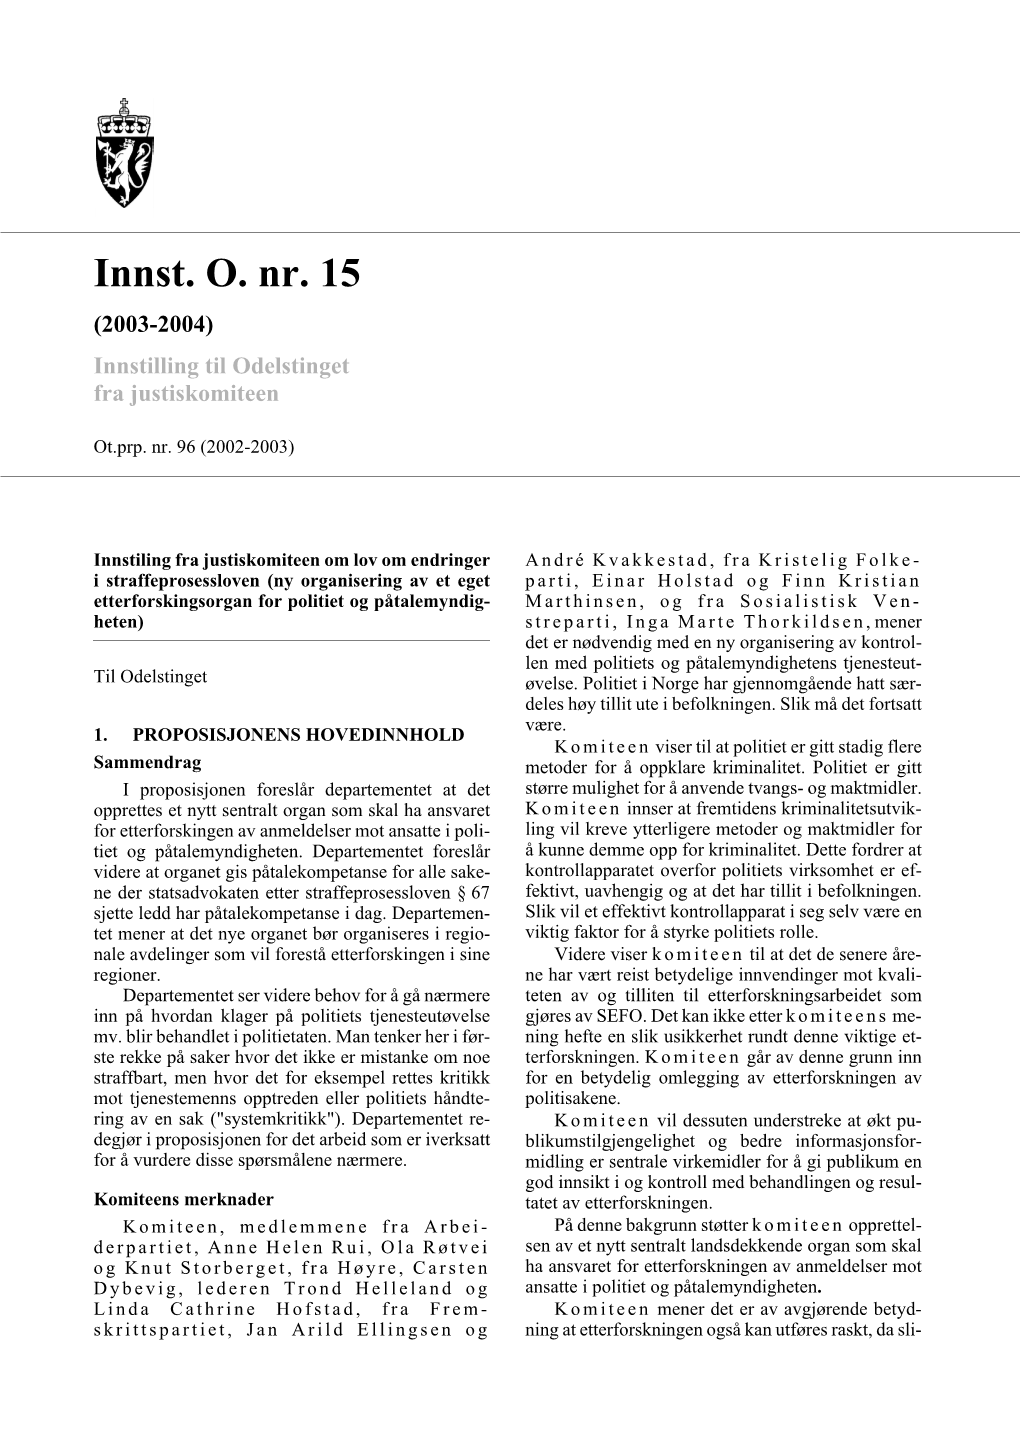 Innst. O. Nr. 15 (2003-2004) Innstilling Til Odelstinget Fra Justiskomiteen